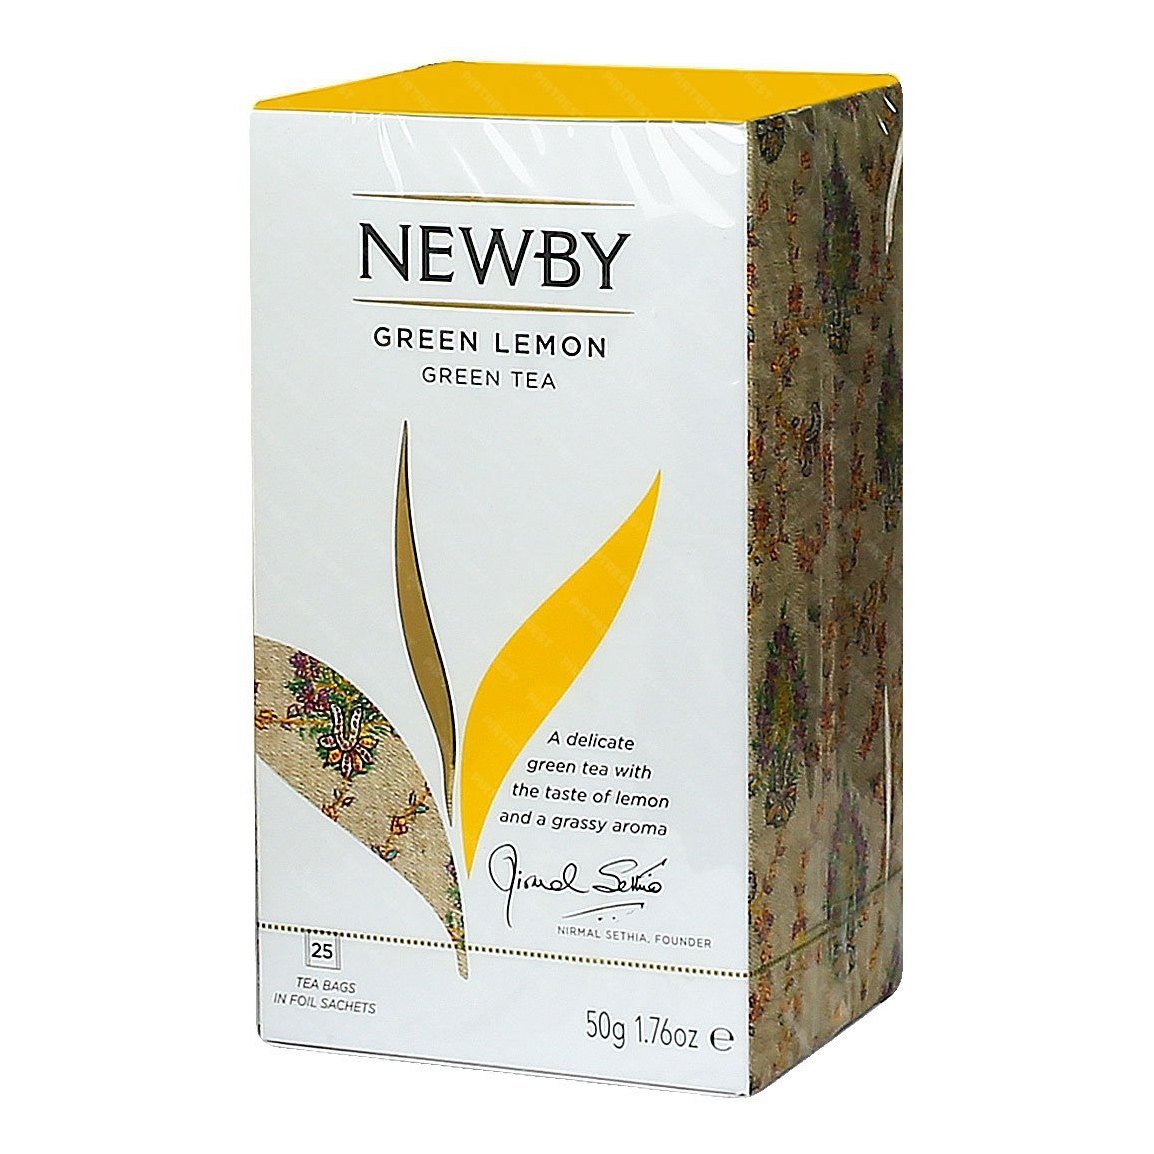 чай зеленый newby green sencha 100г Чай зеленый Newby Green Lemon 25 пакетиков